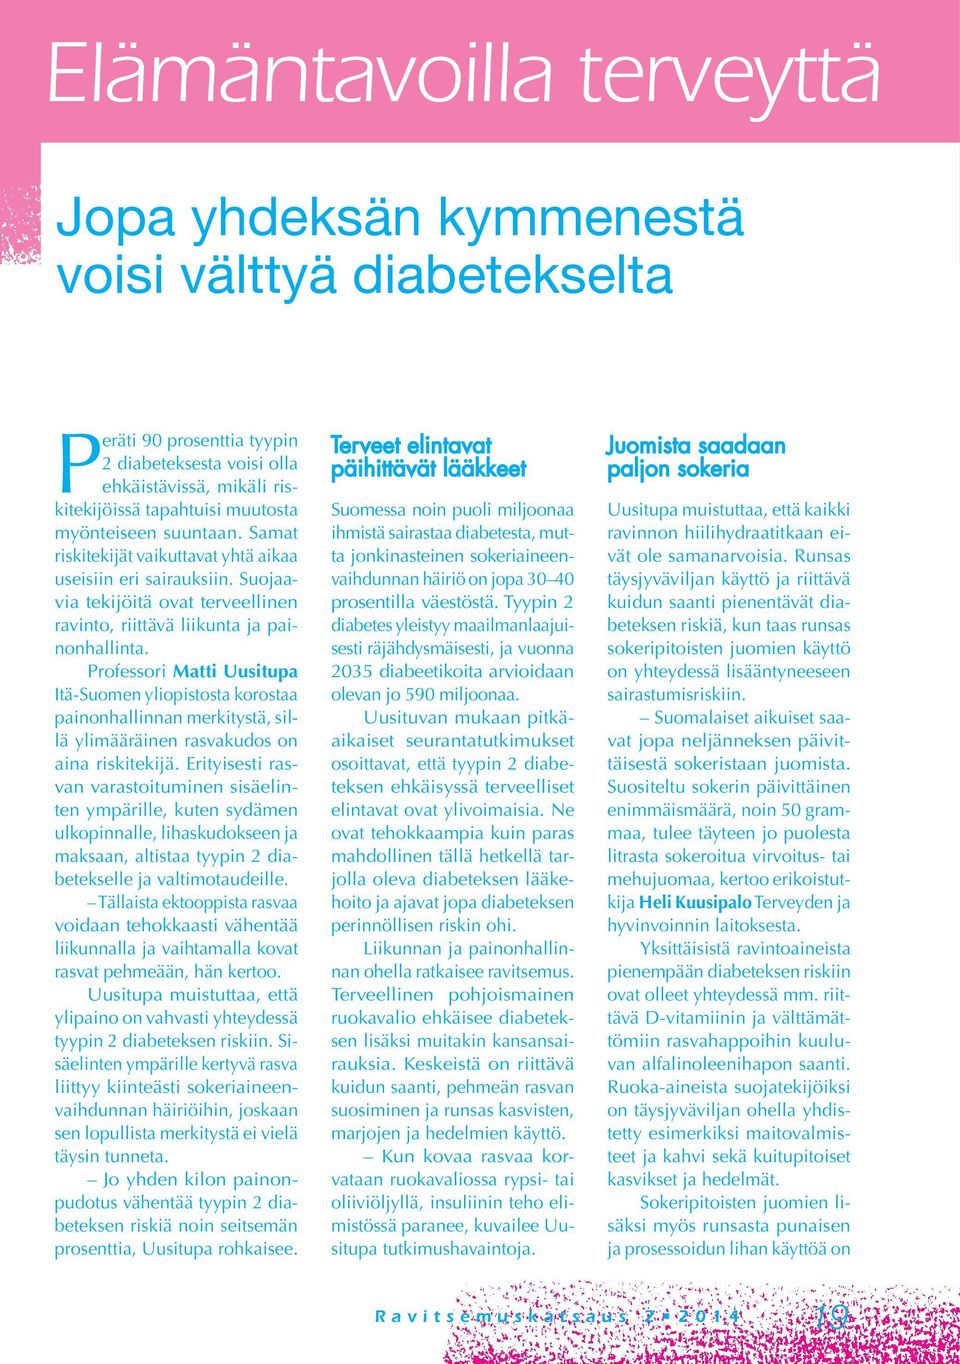 Professori Matti Uusitupa Itä-Suomen yliopistosta korostaa painonhallinnan merkitystä, sillä ylimääräinen rasvakudos on aina riskitekijä.